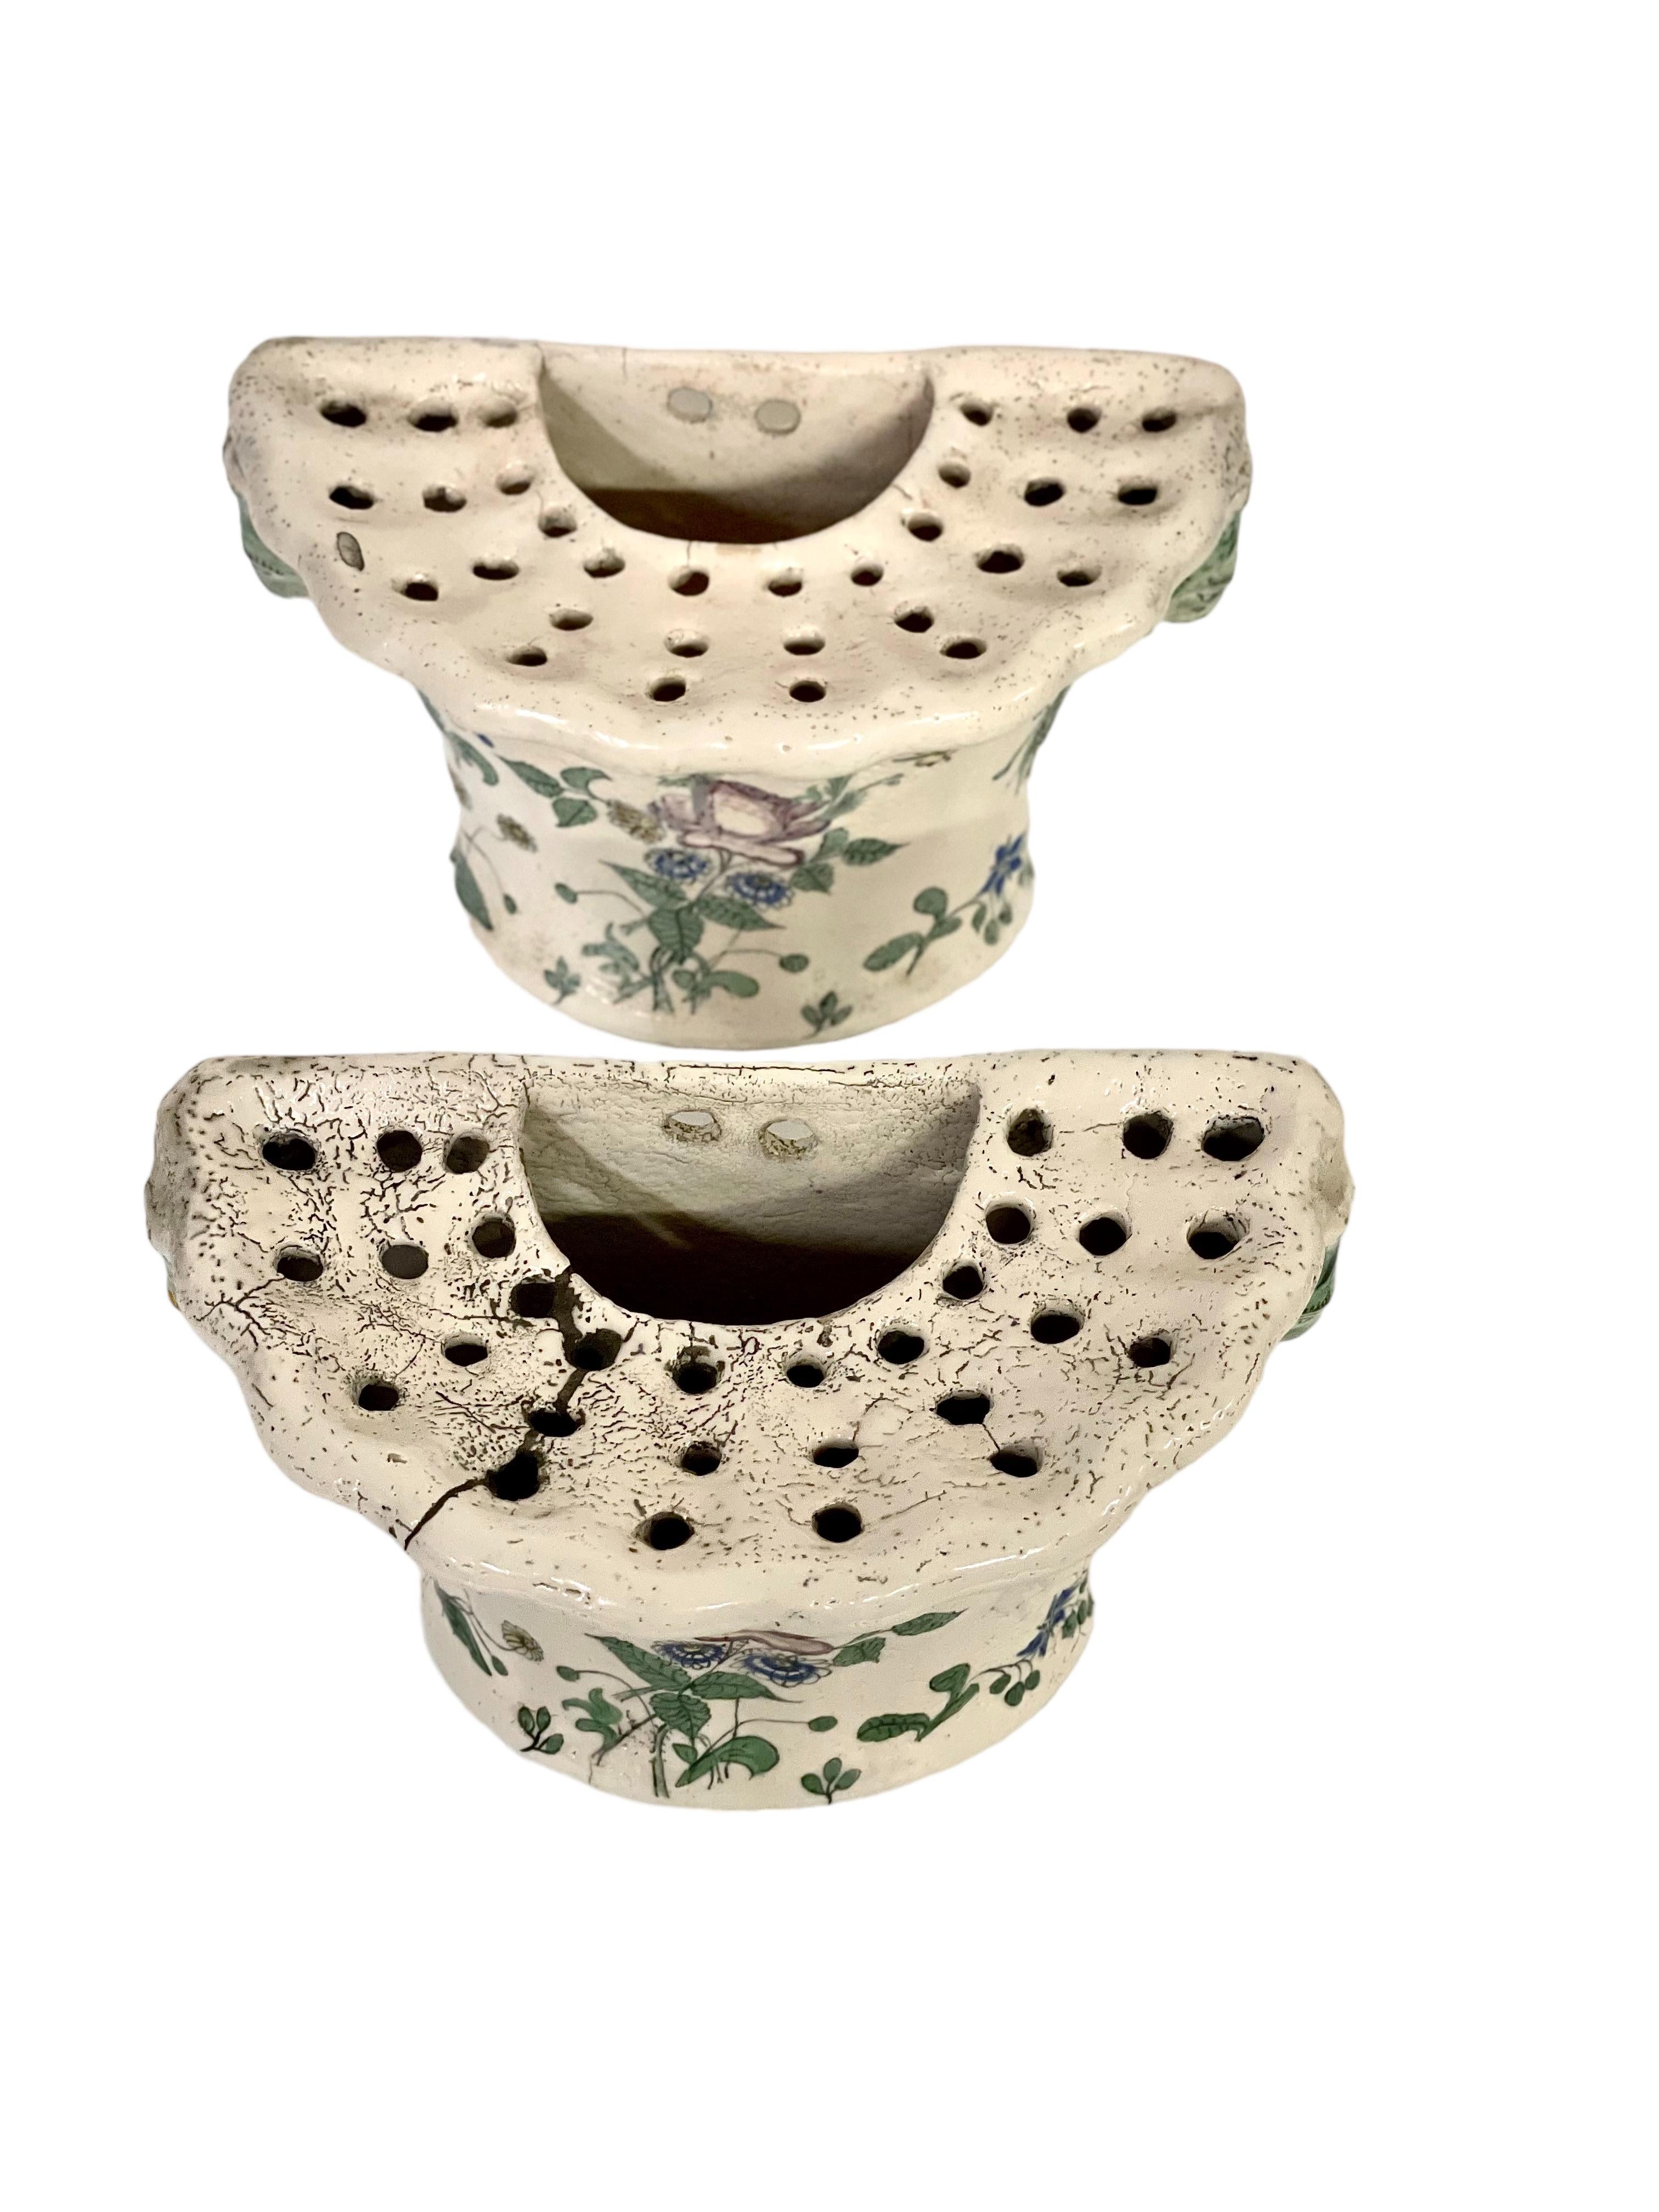 
Ein schönes Paar glasierter Terrakotta-Blumenvasen im rustikalen Stil aus dem 18. Jahrhundert. Jede dieser entzückenden Vasen hat die Form eines D, mit einem gadronierten Außenrand, dreißig Stiellöchern und einem Wasserreservoir. Die Dekoration ist